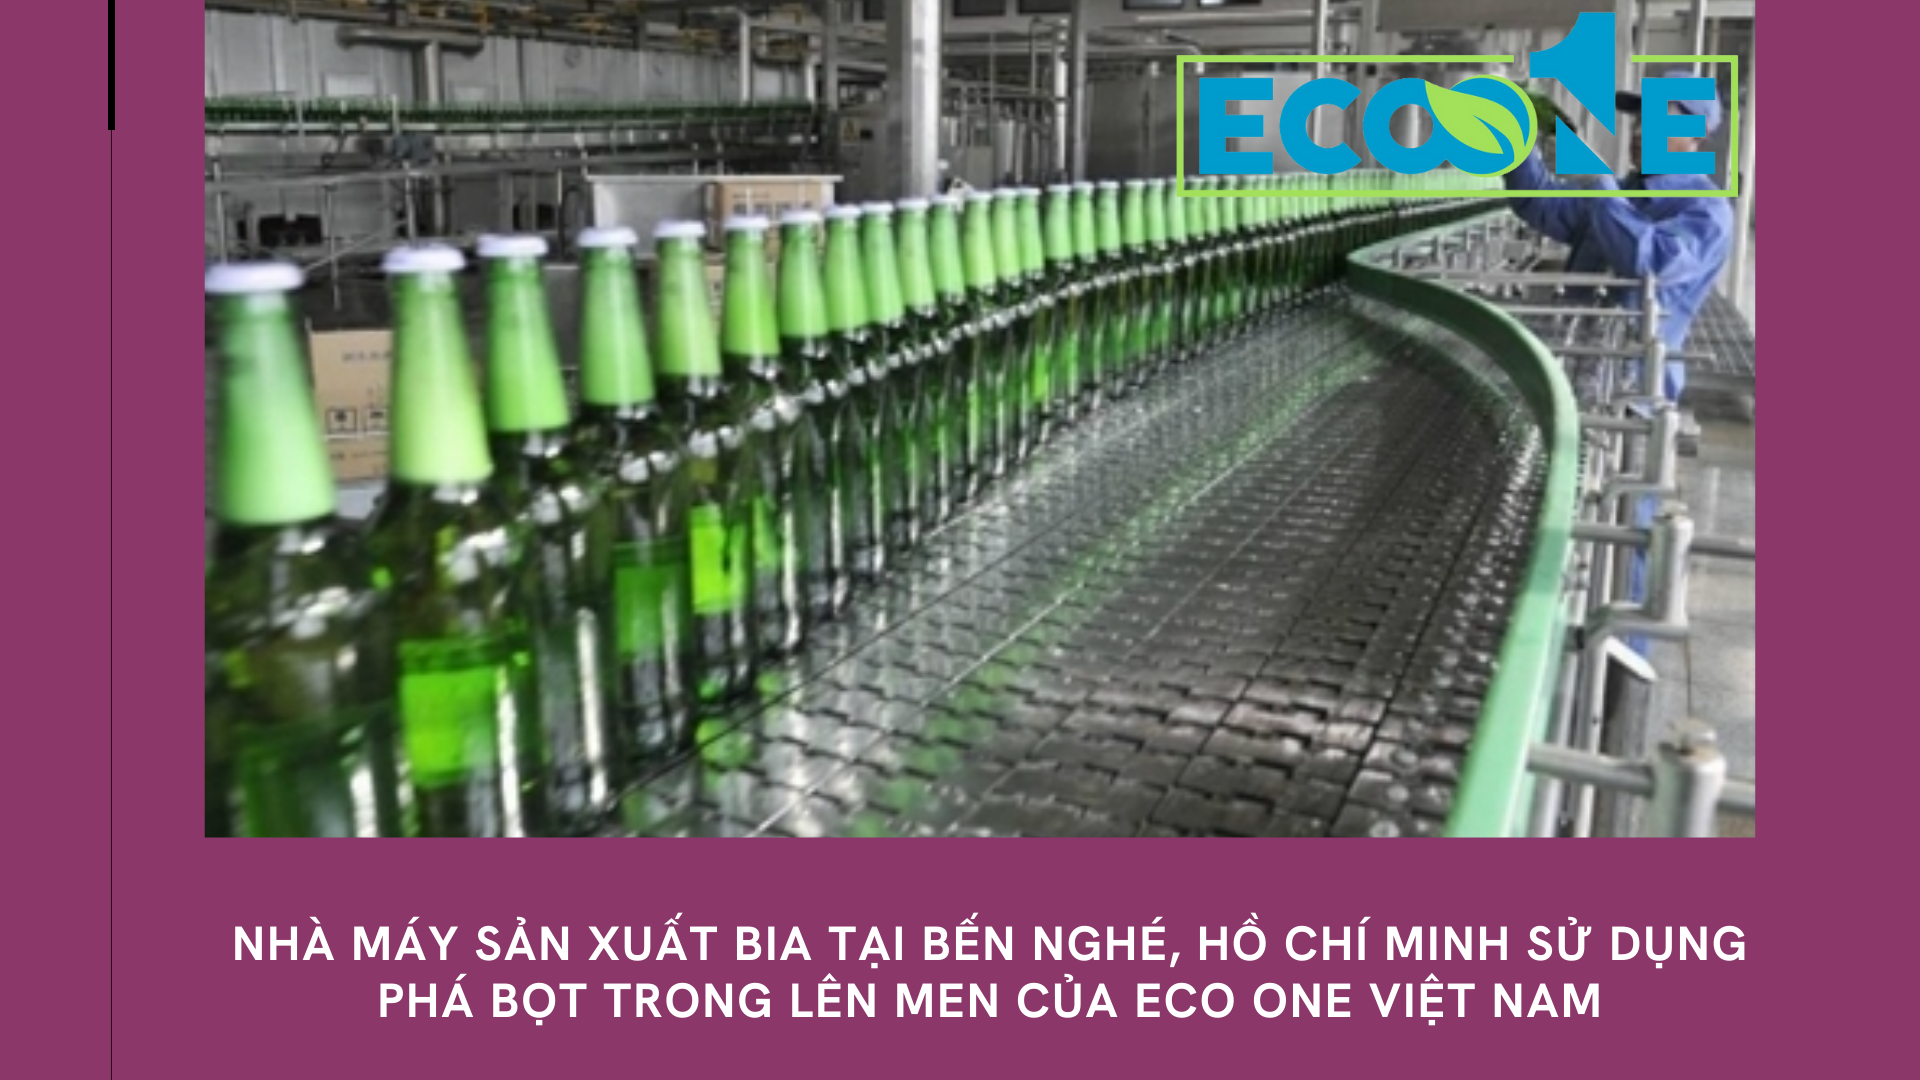 Nhà máy sản xuất bia tại bến nghé, hồ chí minh sử dụng phá bọt trong lên men của Eco One Việt Nam